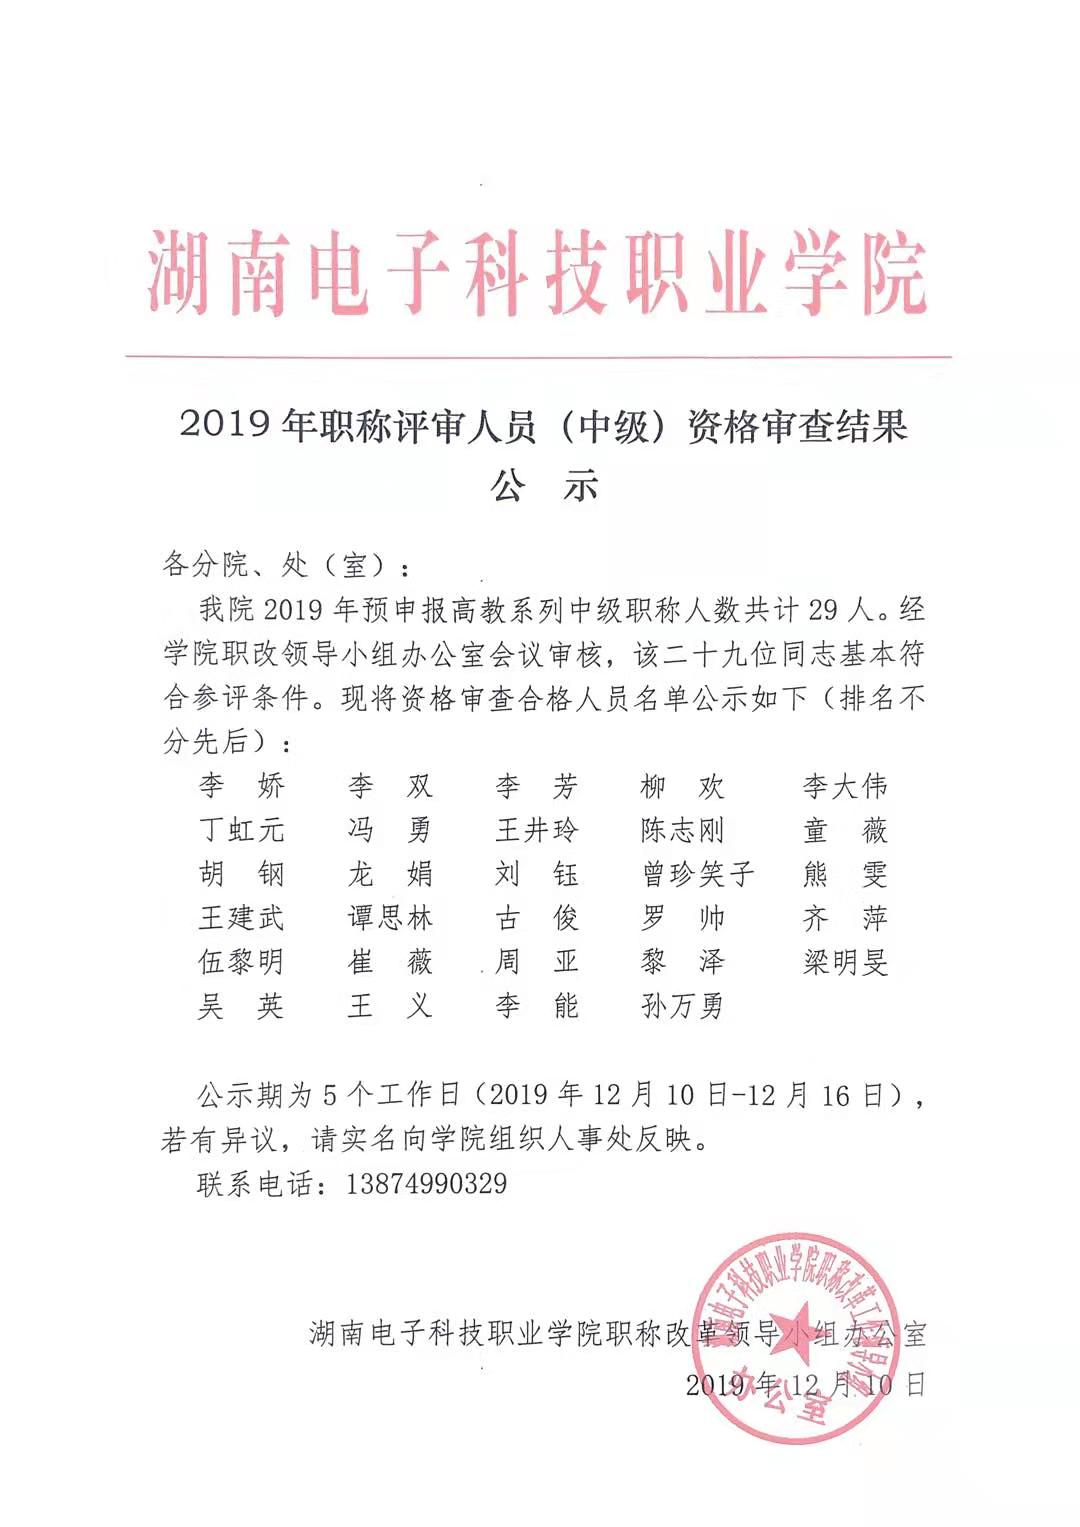 湖南电子科技职业学院2019年职称评审人员（中级）资格审查结果公示